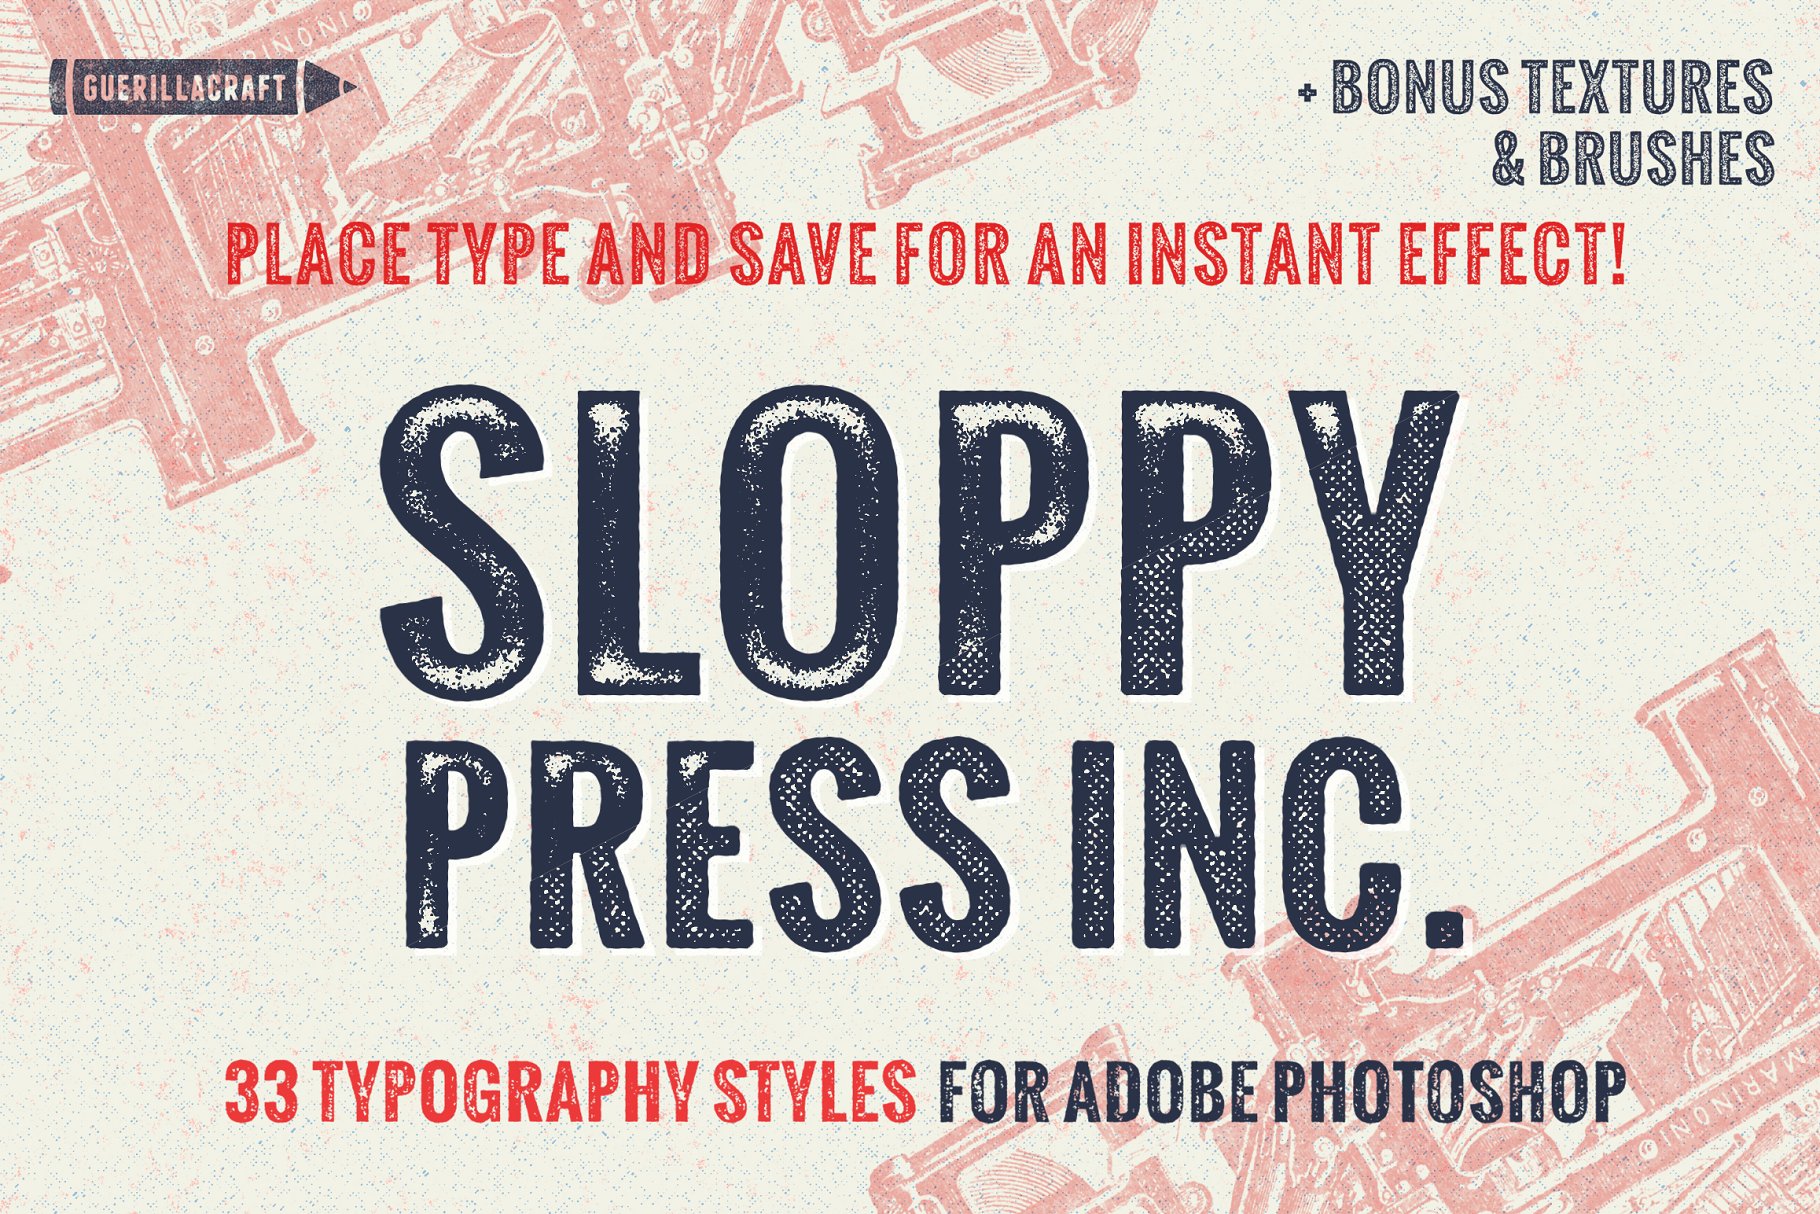 复古手工印刷文本图层样式 Sloppy Press Inc.插图